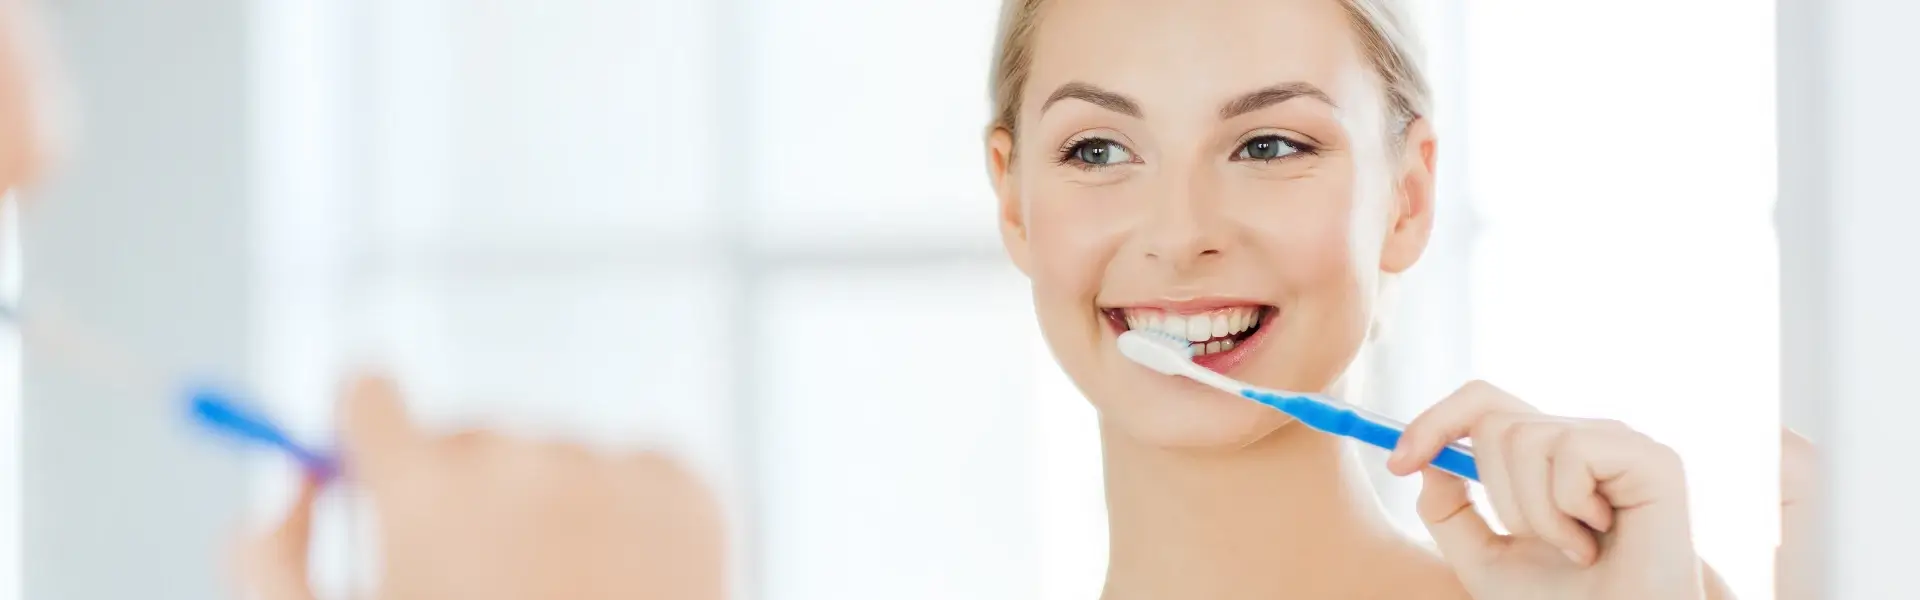 כיצד לנקות את השיניים לאחר הסרת שיני בינה